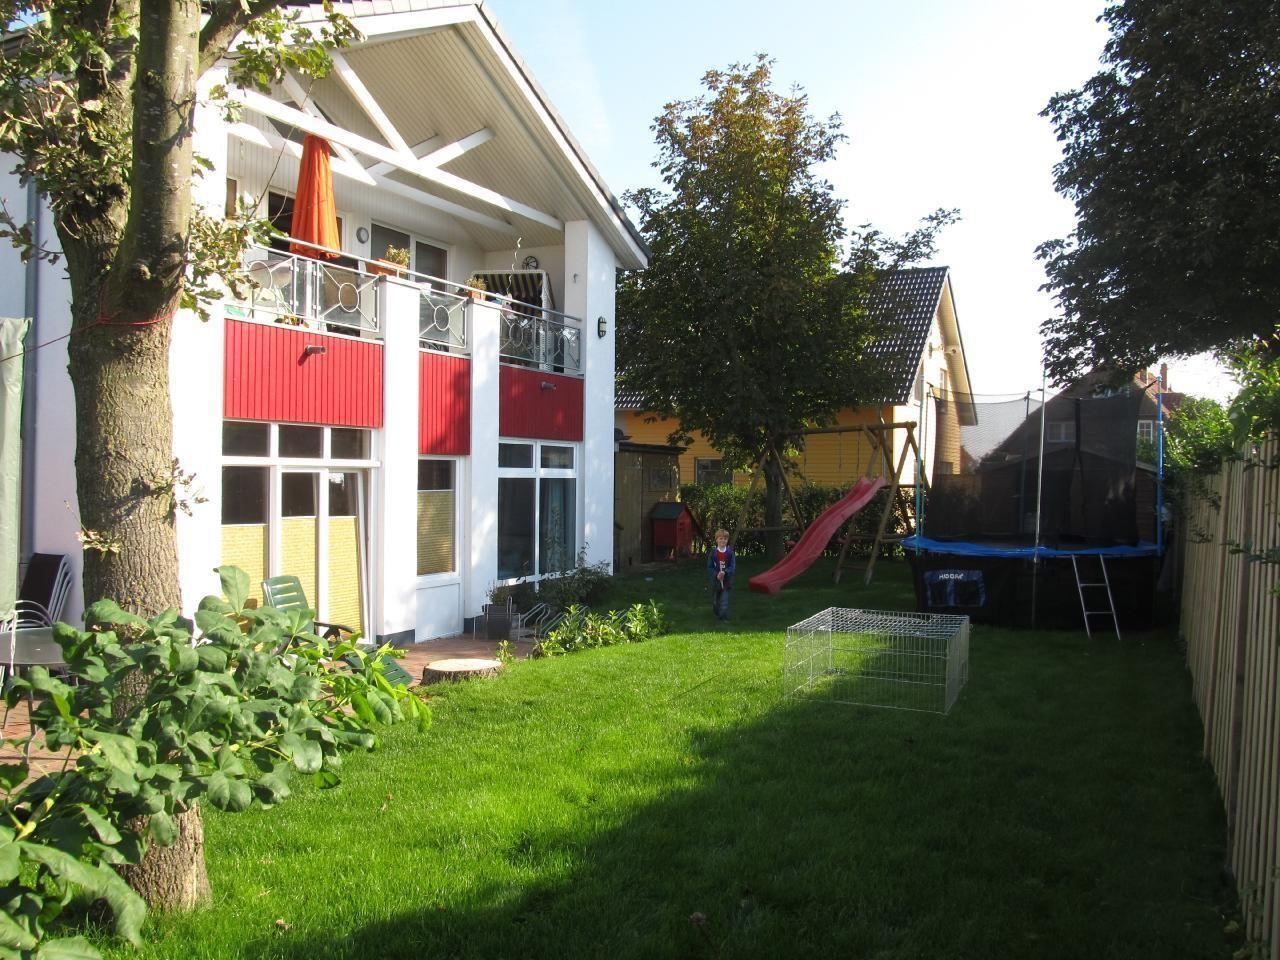 Appartement in Wulfen mit Garten, Grill und Terras   Holsteinische OstseekÃ¼ste